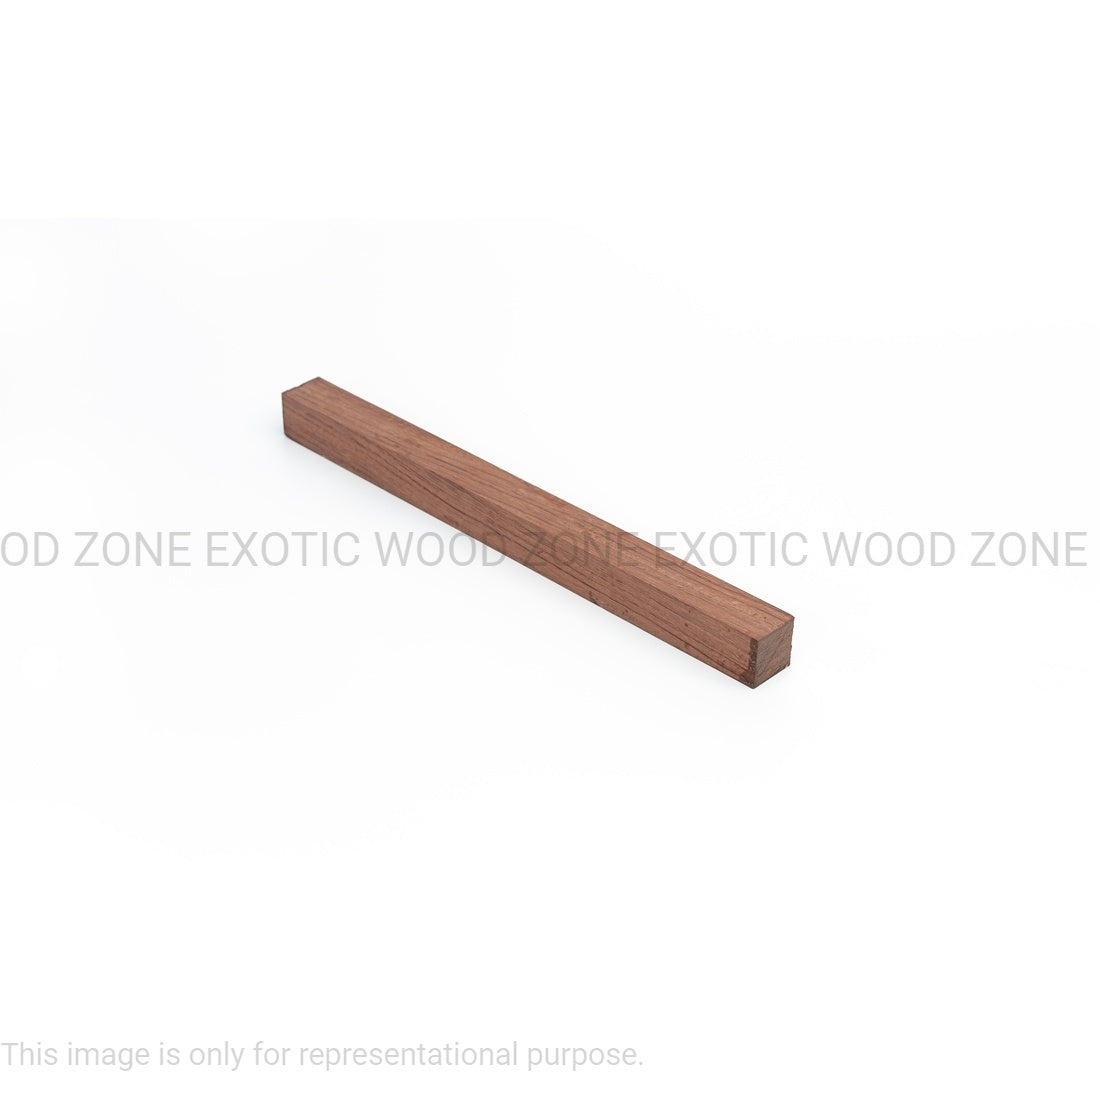 Pack Of 8 Bubinga Hardwood Turning Square Wood Blanks 1 x 1 x 12 inches